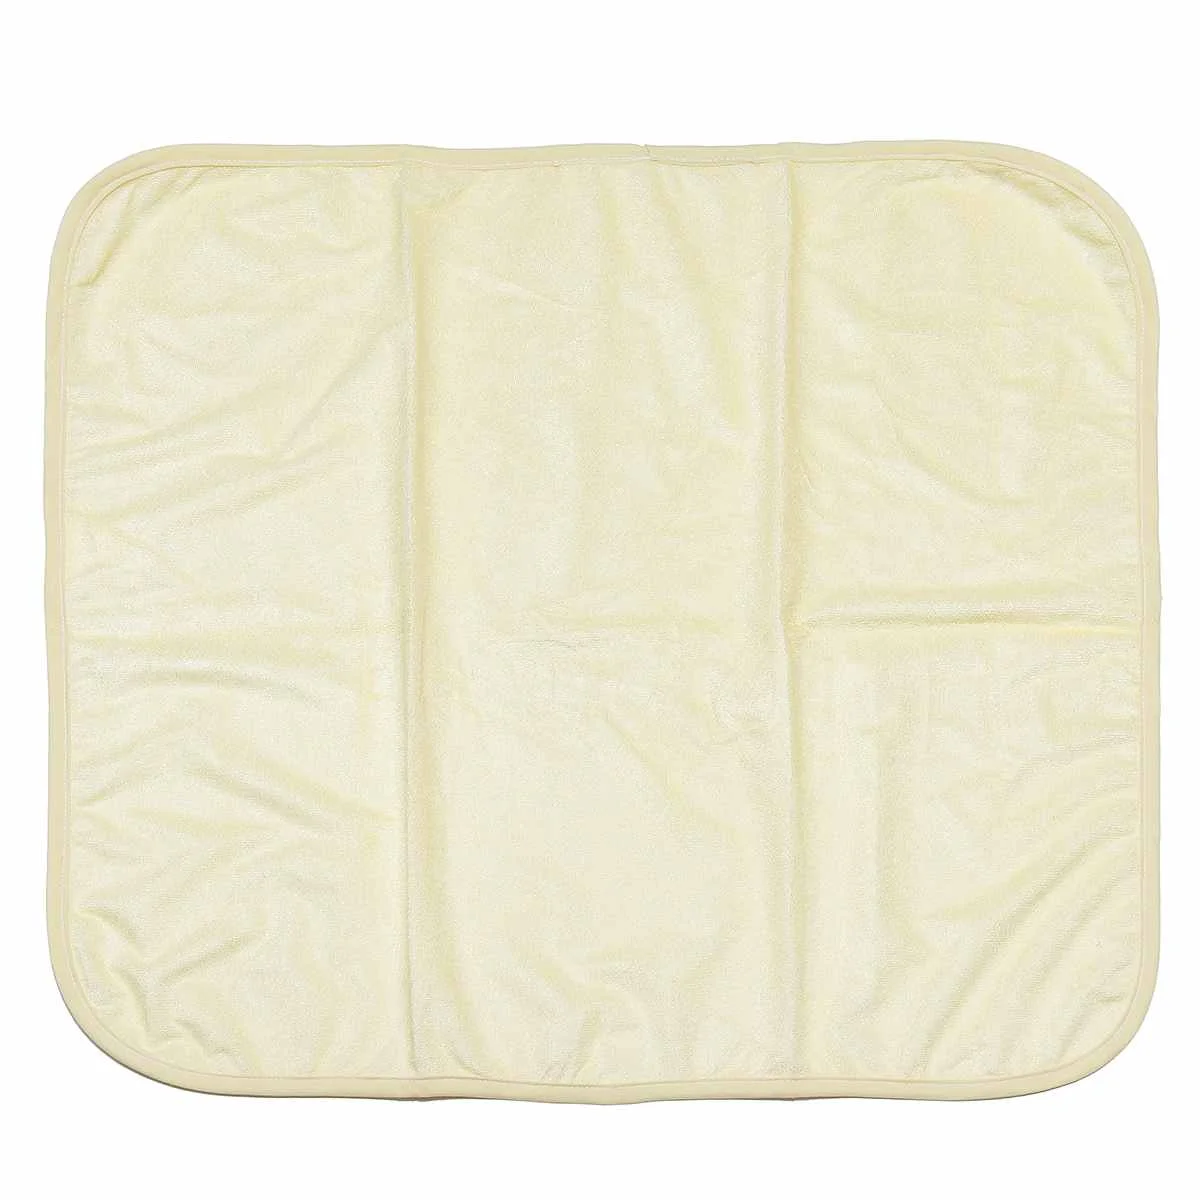 Водонепроницаемый моющийся многоразовый коврик для кровати для детей, для детей, для пожилых, для недержания влага в кровати, чехол для матраса, 3 цвета, 7 размеров